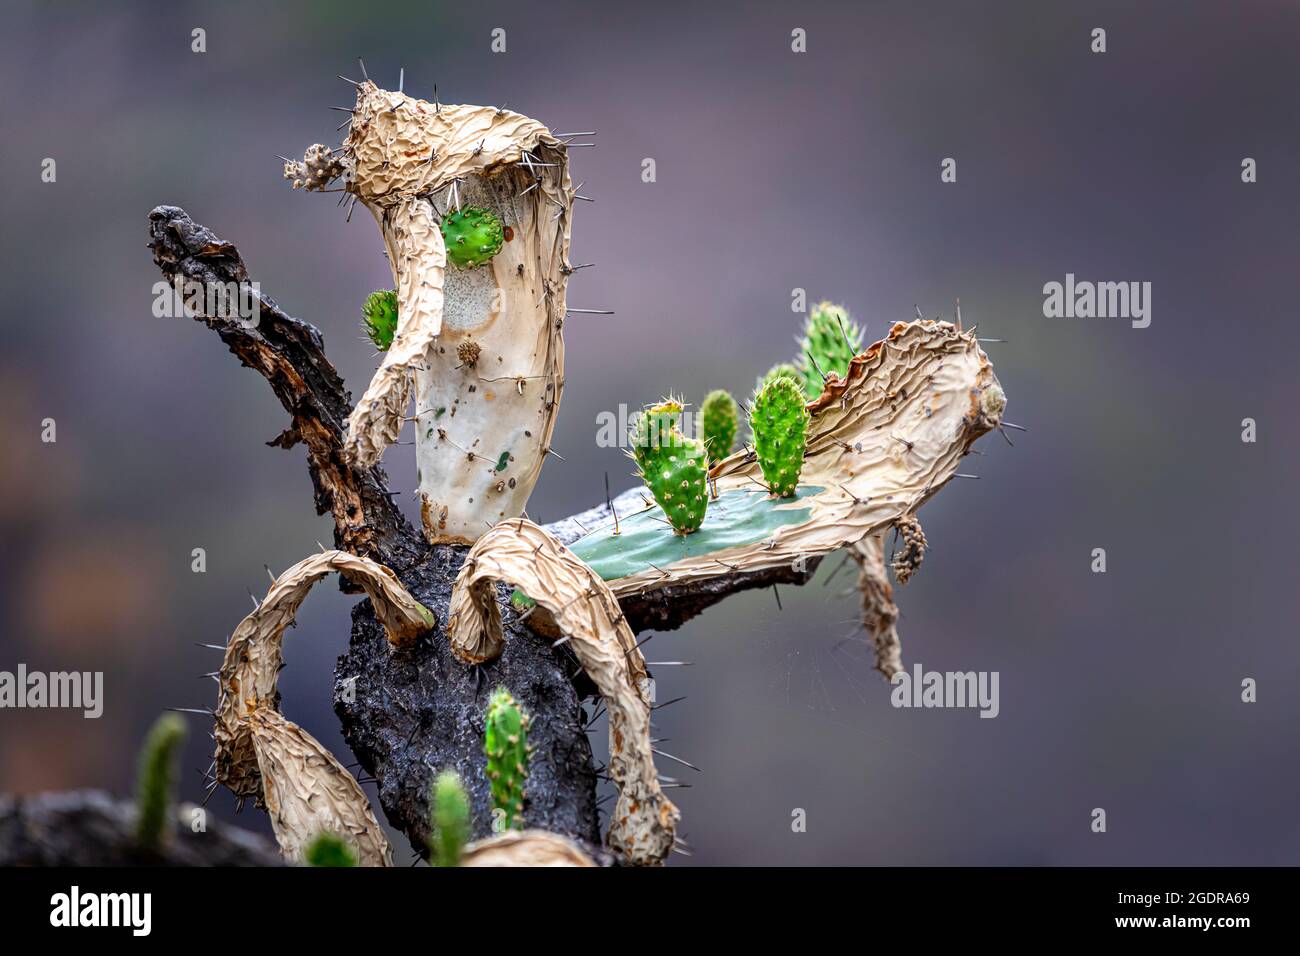 El diminuto cactus Prickly Pear crece en un adulto dañado por el fuego cerca de Morelia, Michoacán, México. Foto de stock